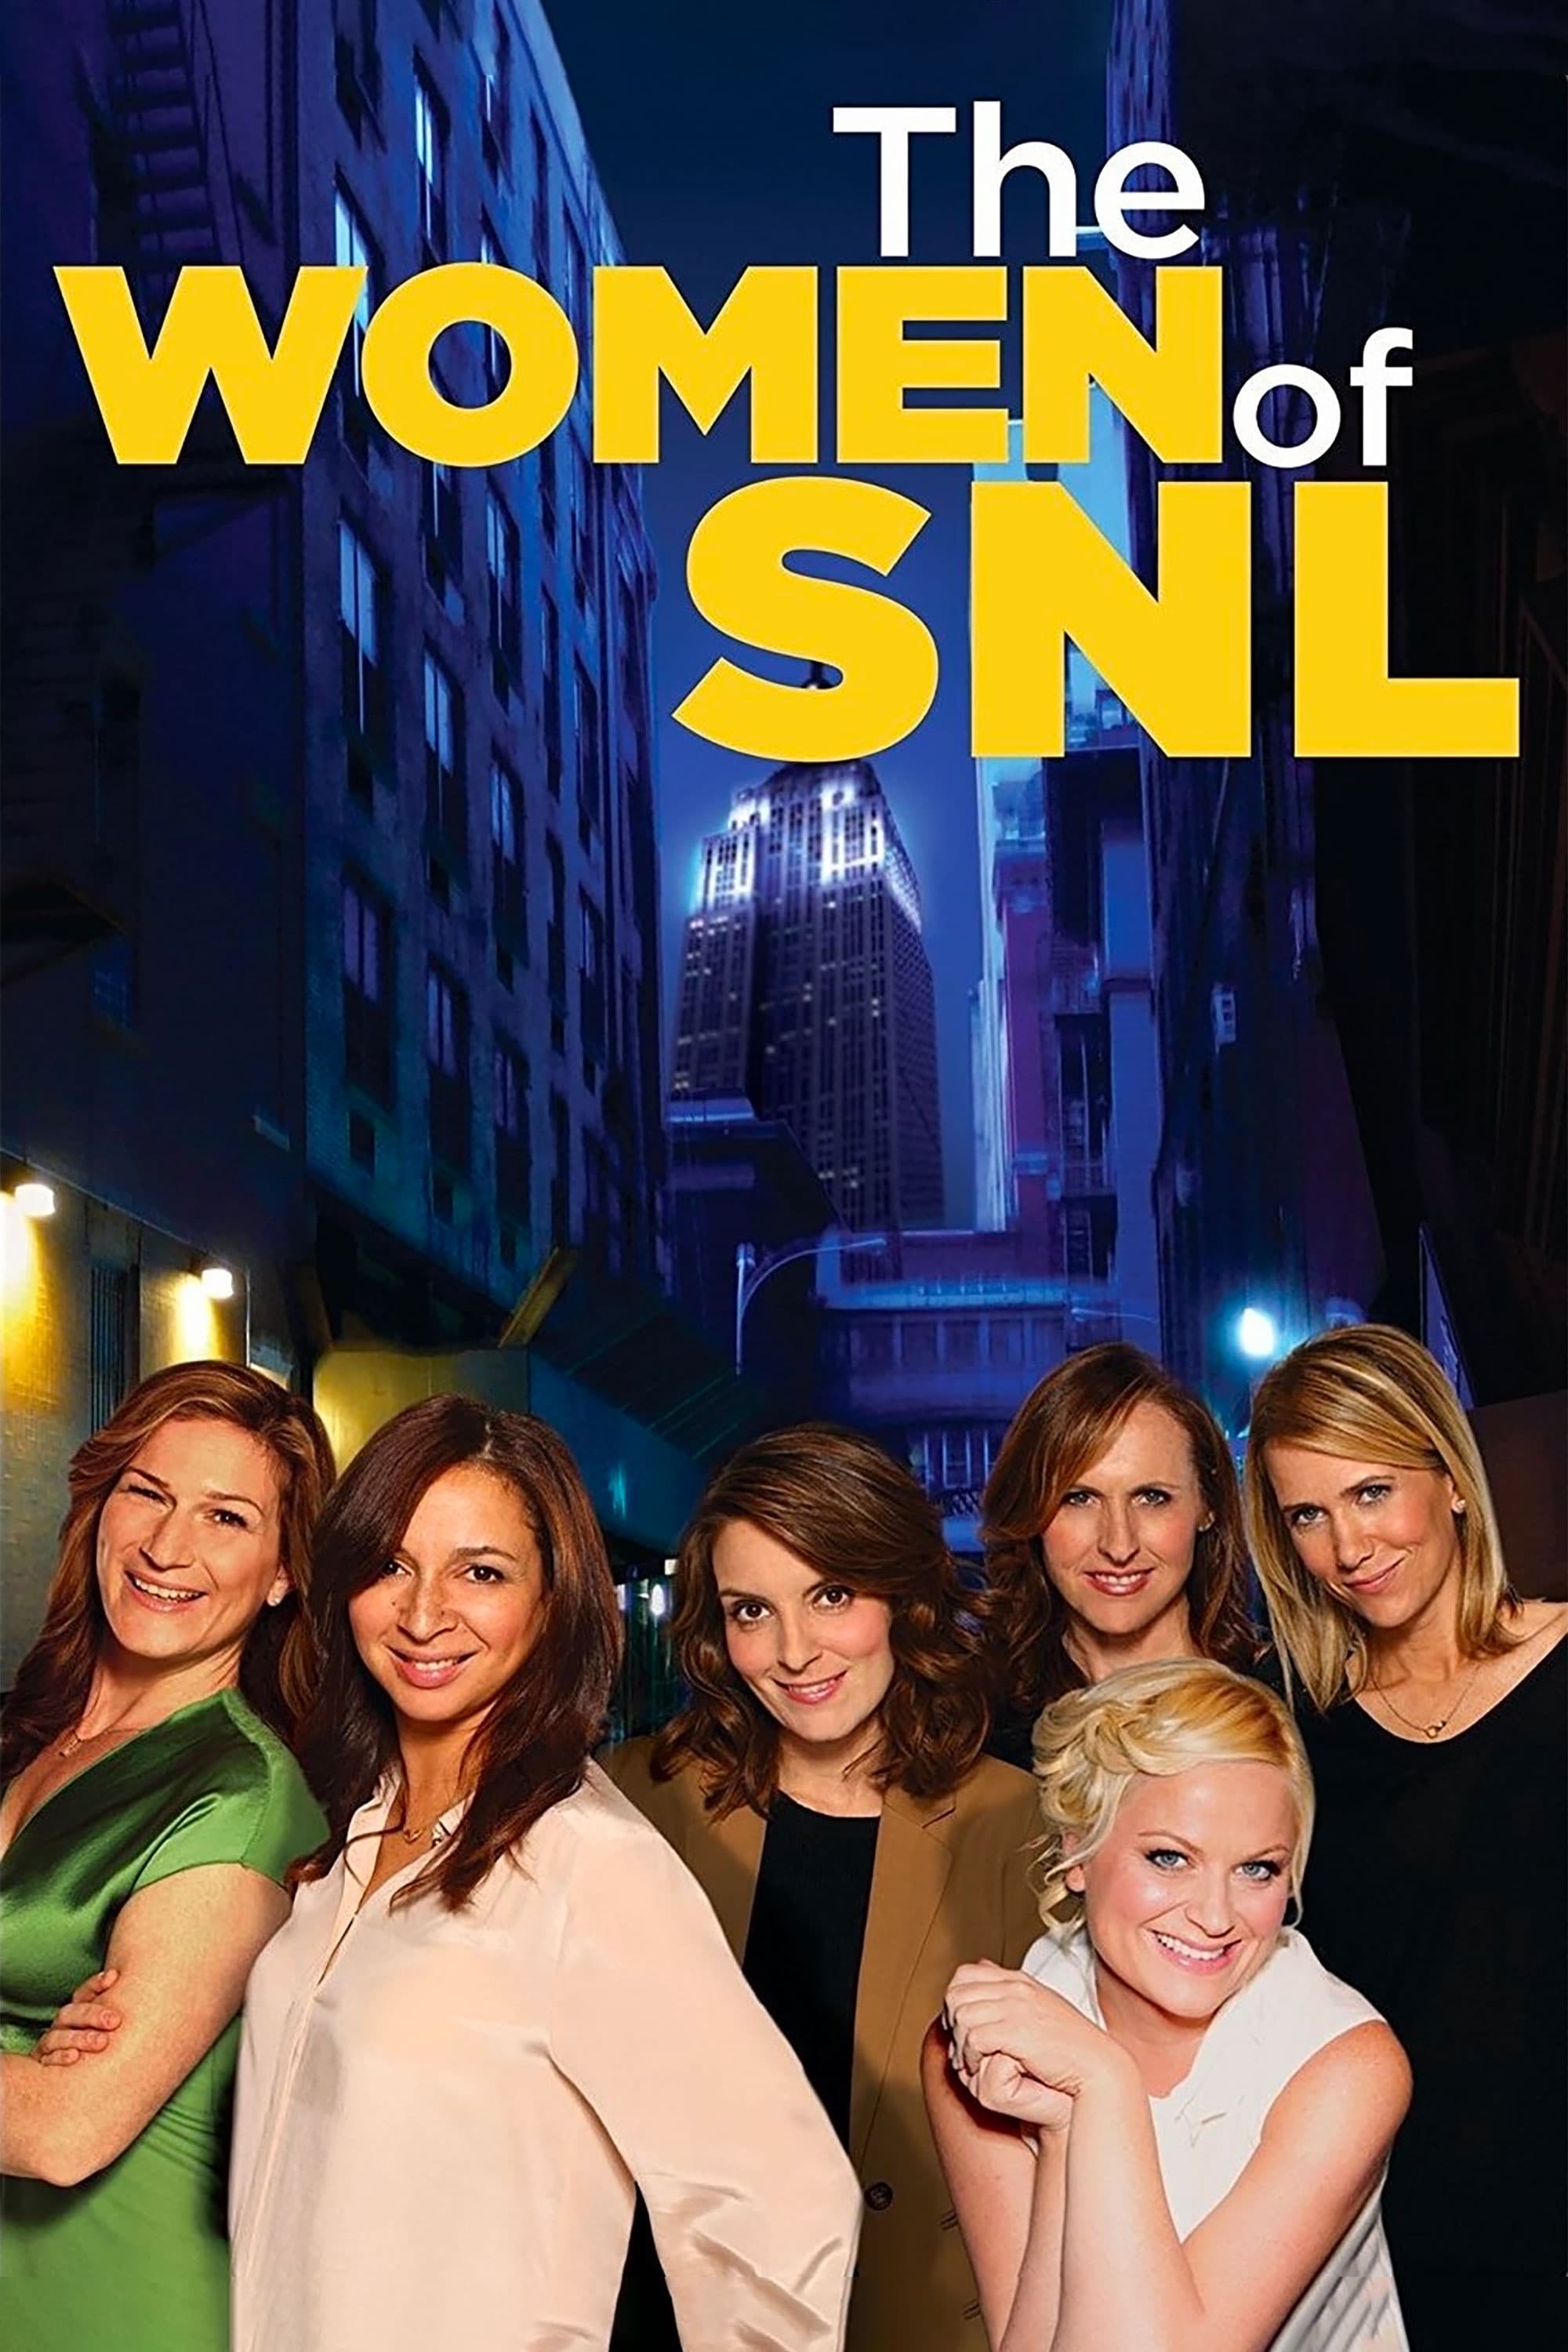 The Women of SNL